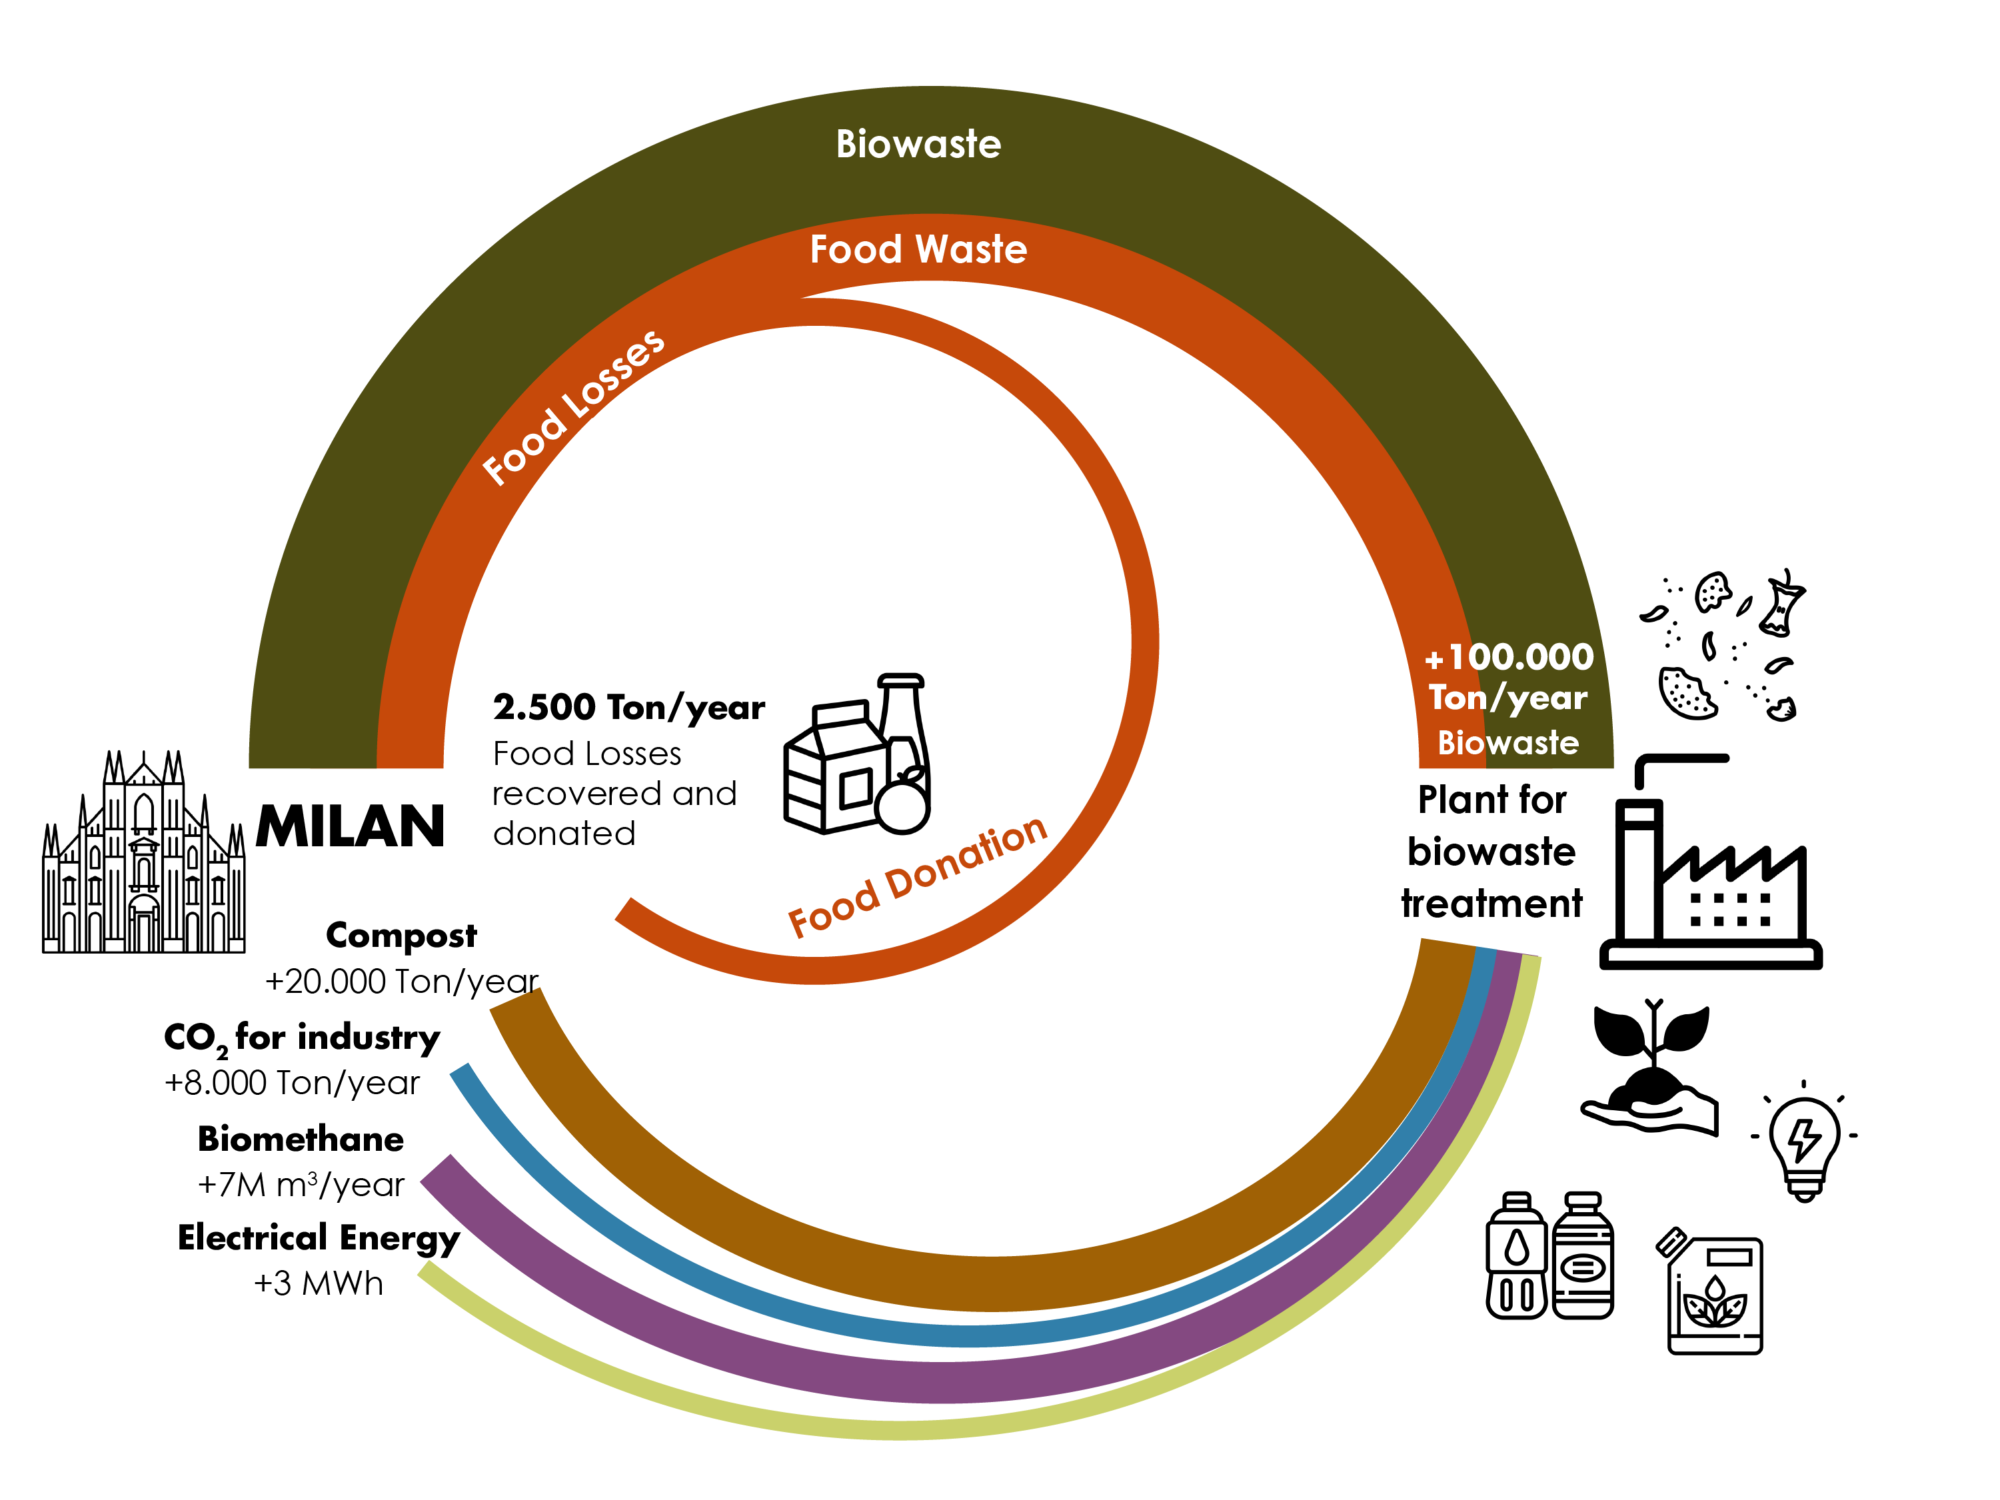  Ciclo de residuos biológicos de Milán – infografía de la administración municipal